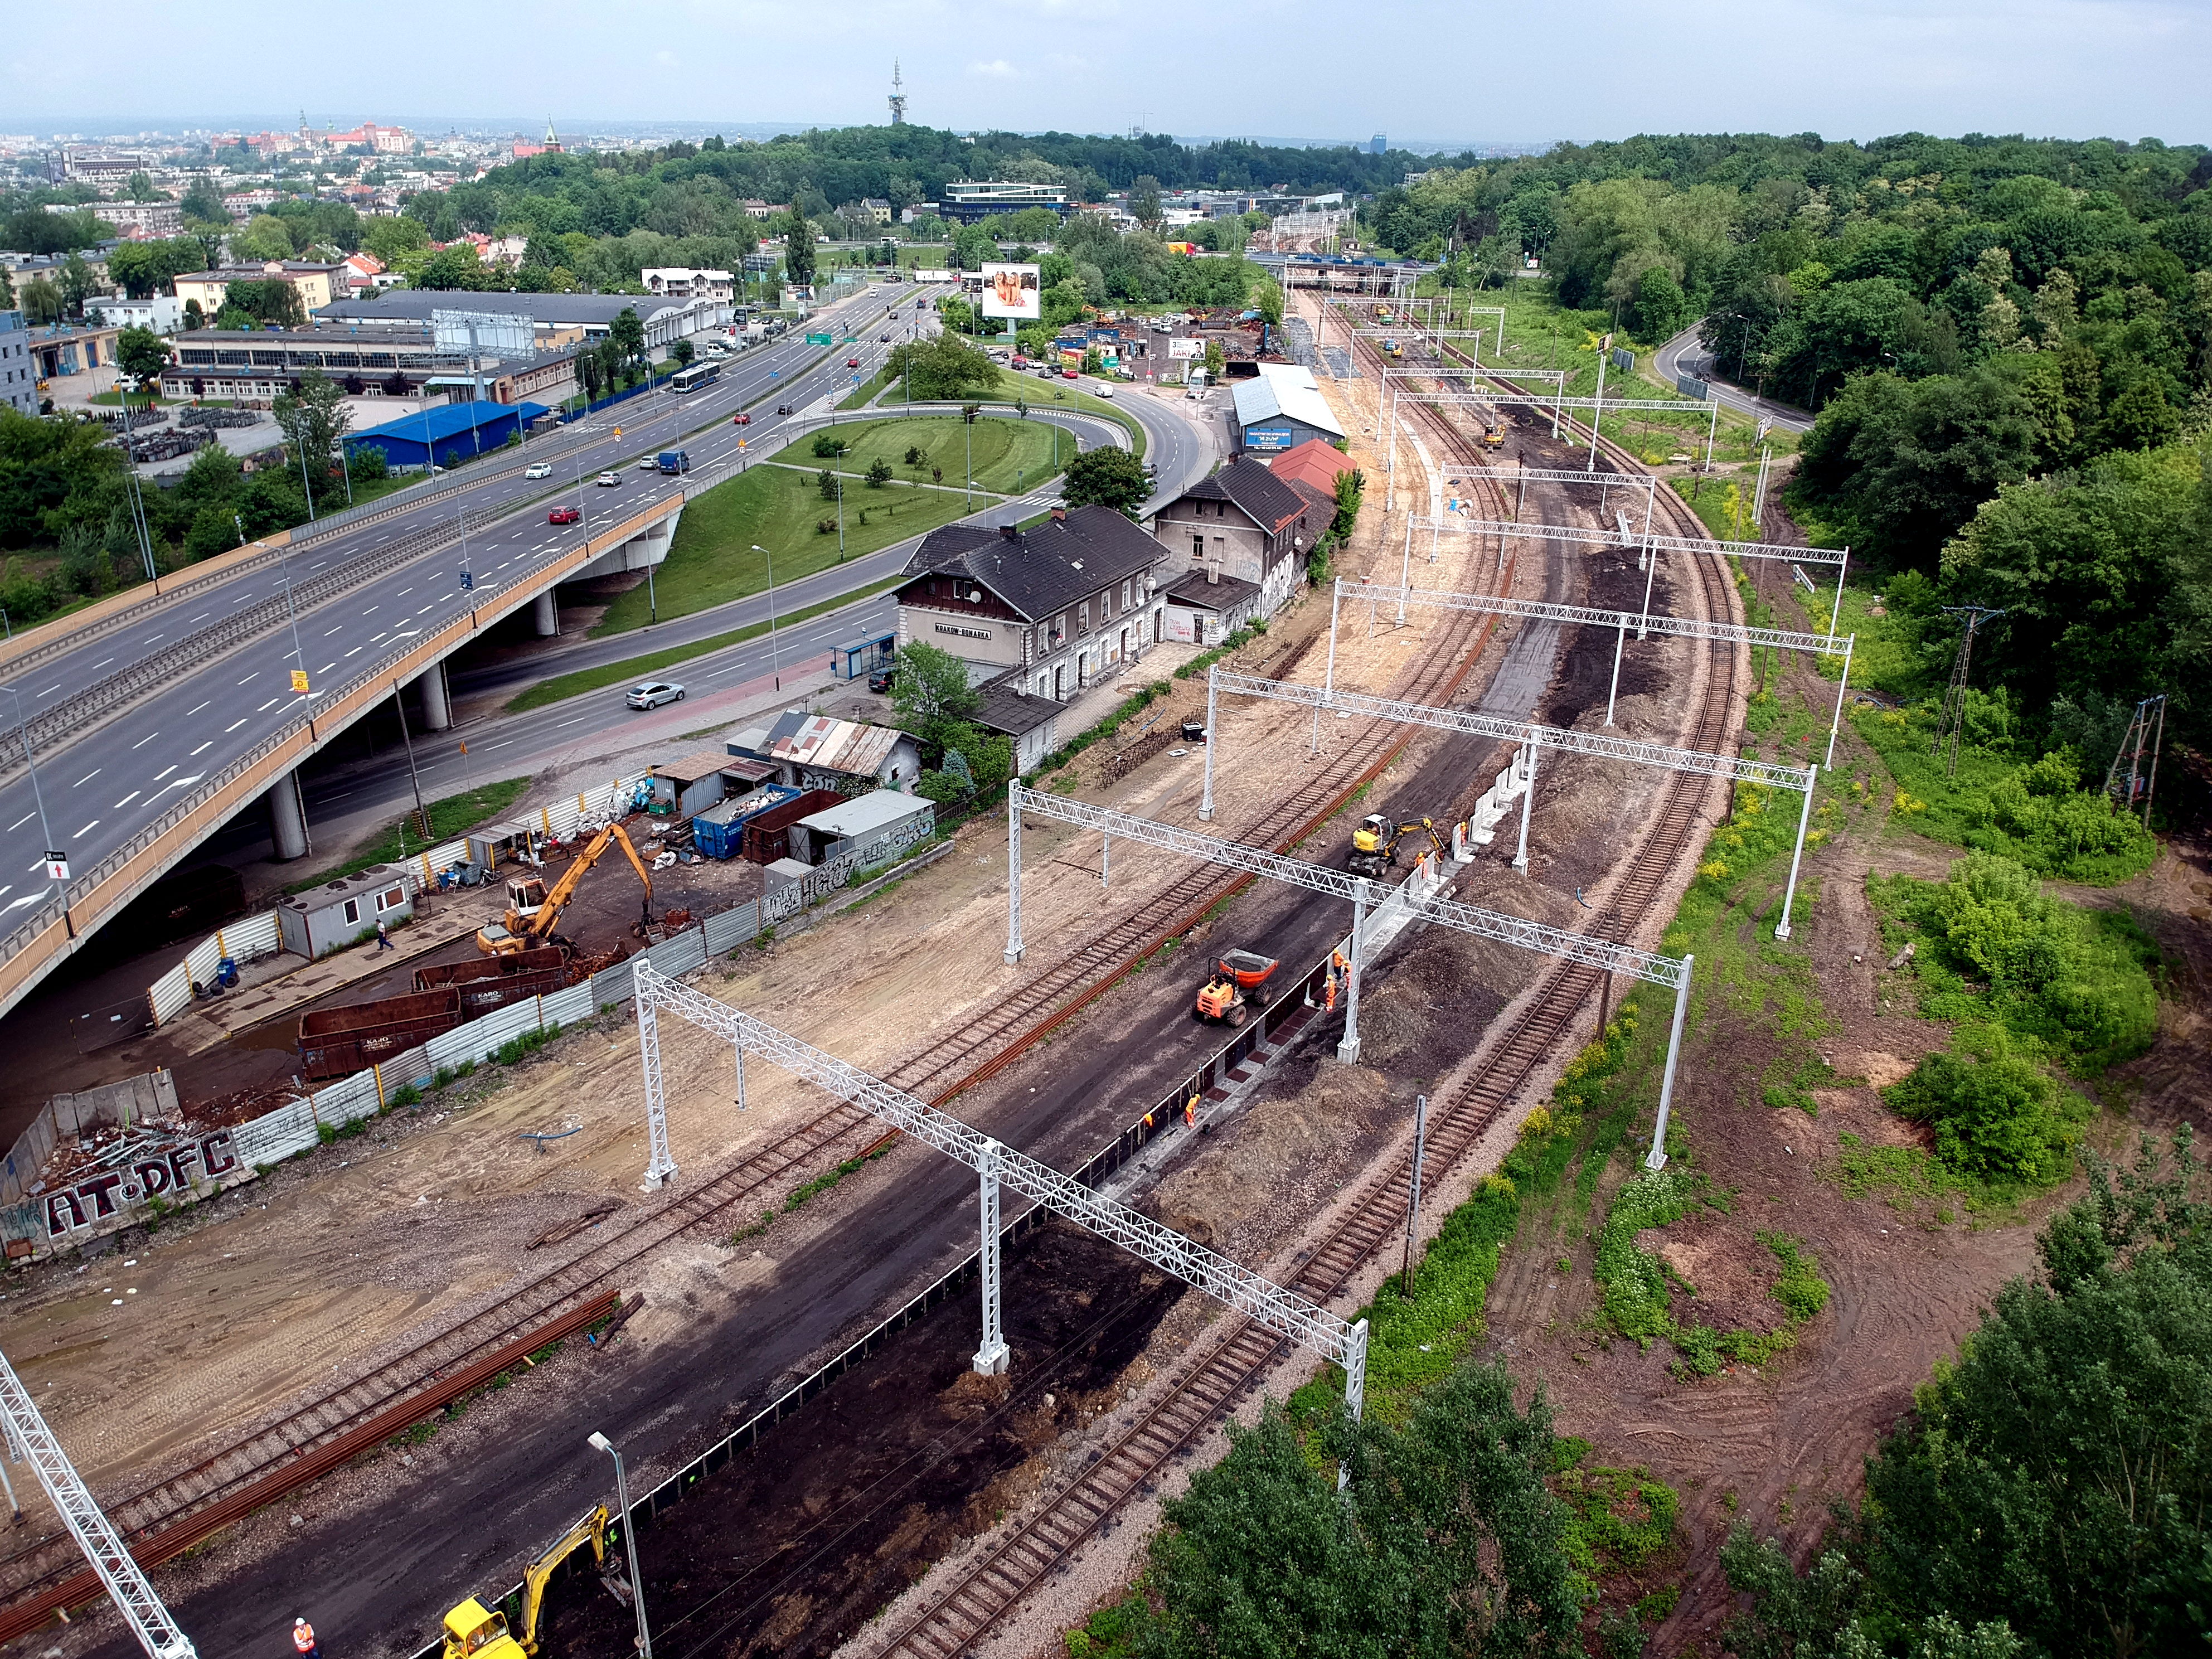 Prace budowlane na torze kolejowym, Kraków  - Spoorwegbouw